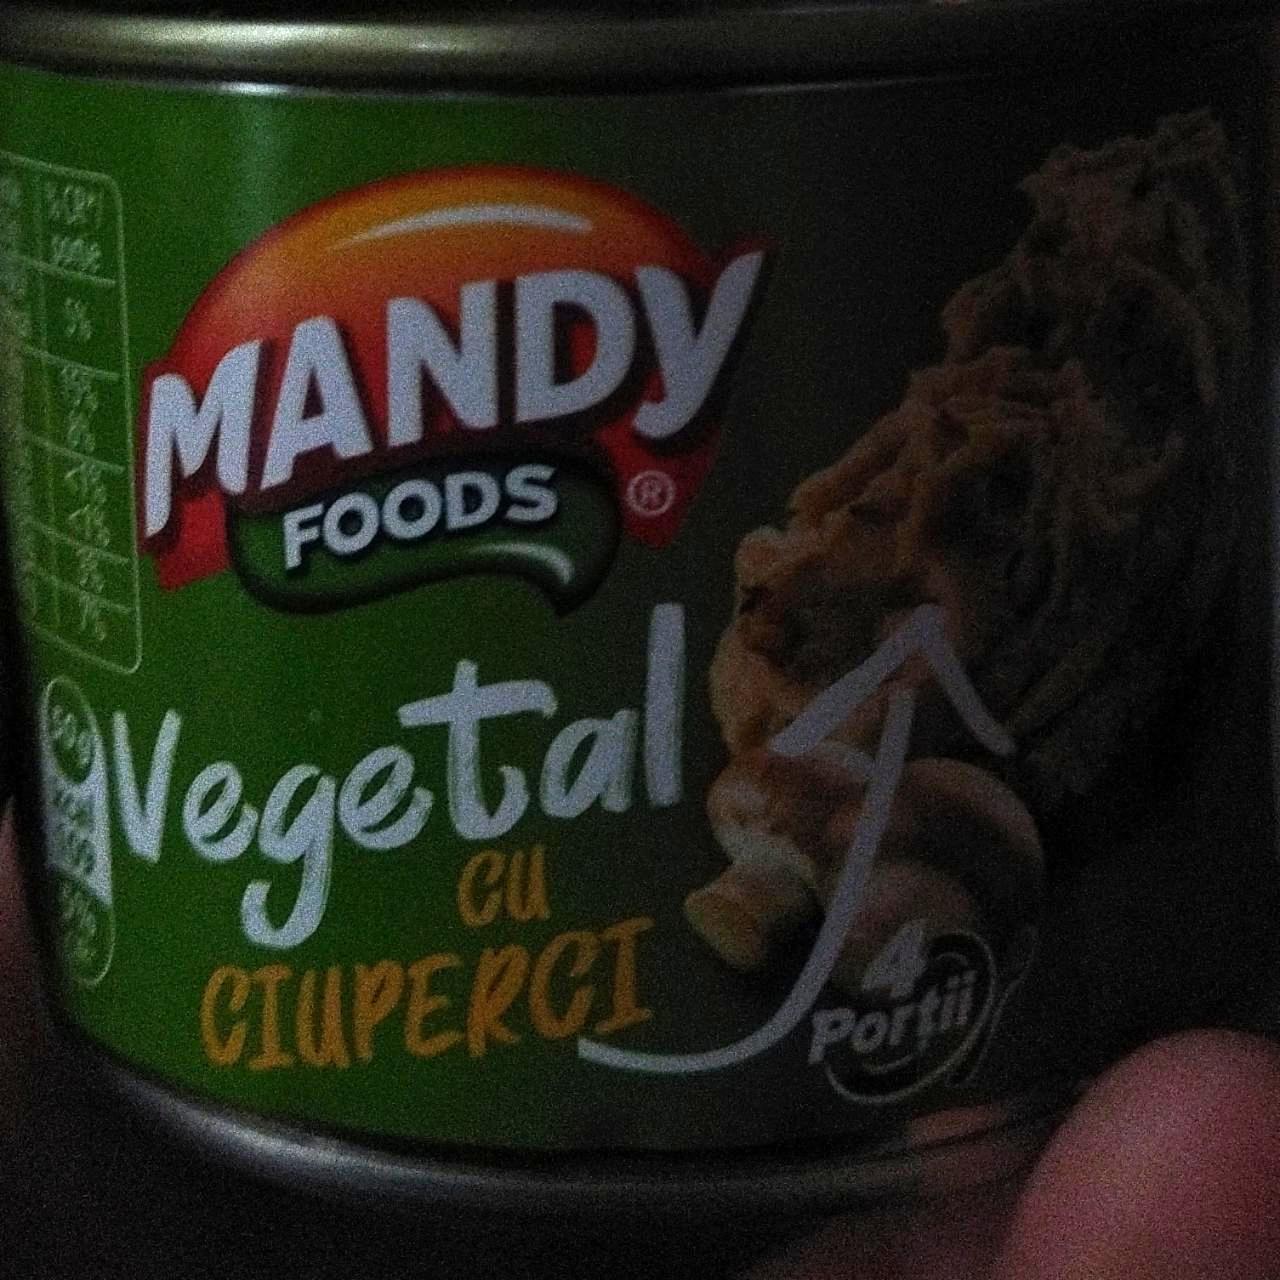 Фото - Vegetal cu ciuperci Mandy foods